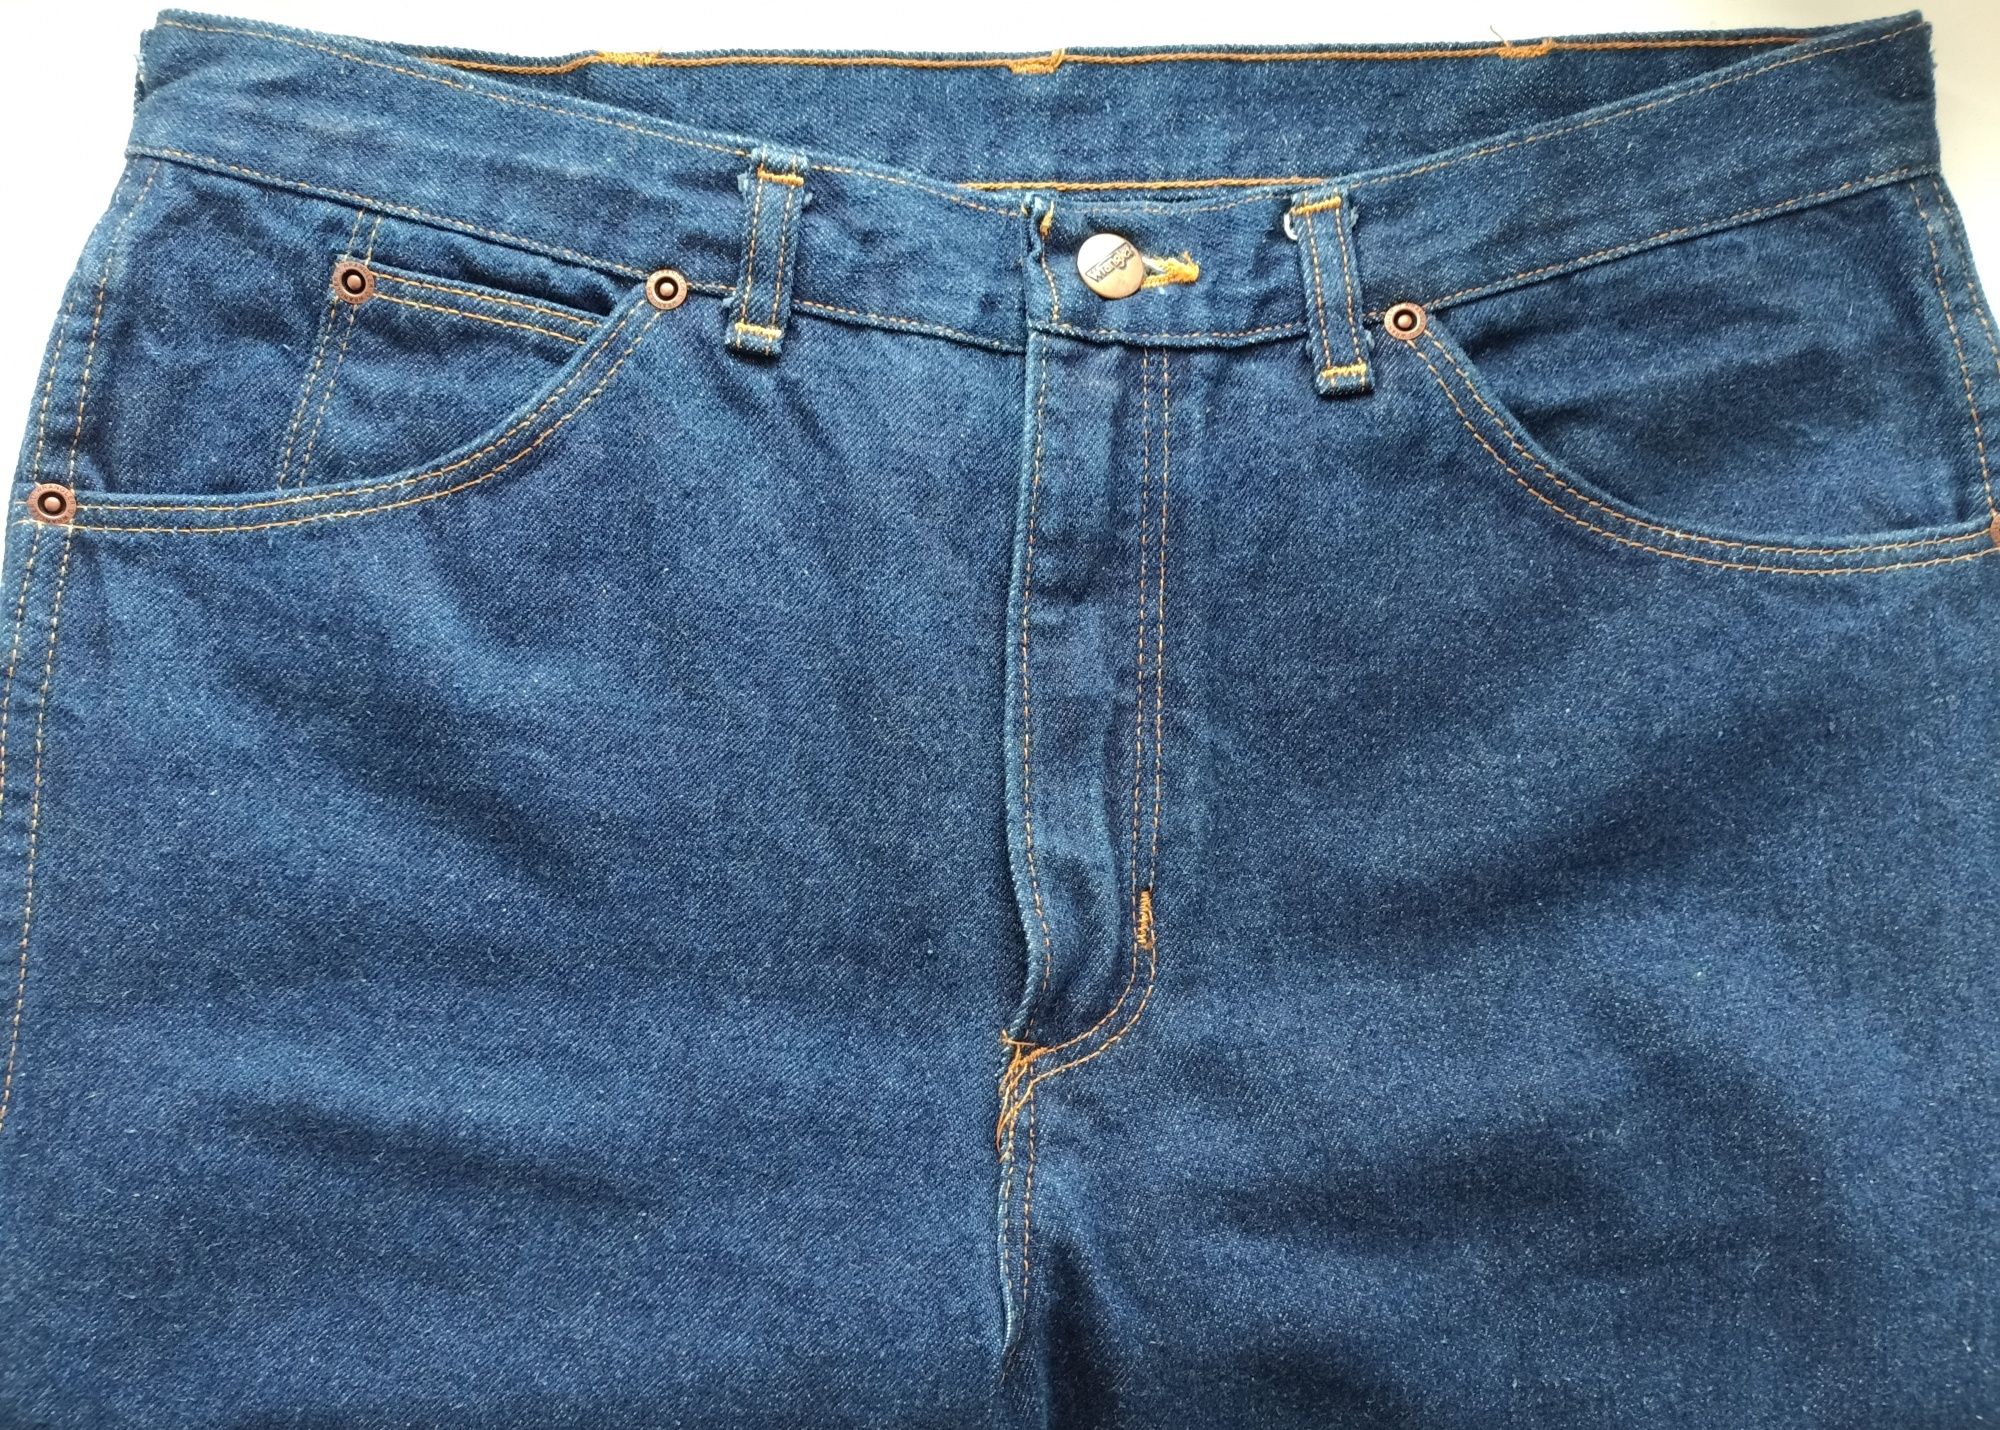 Редкие винтажные джинсы WRANGLER W33 L34 Из серии F.U.S. Lee Новые